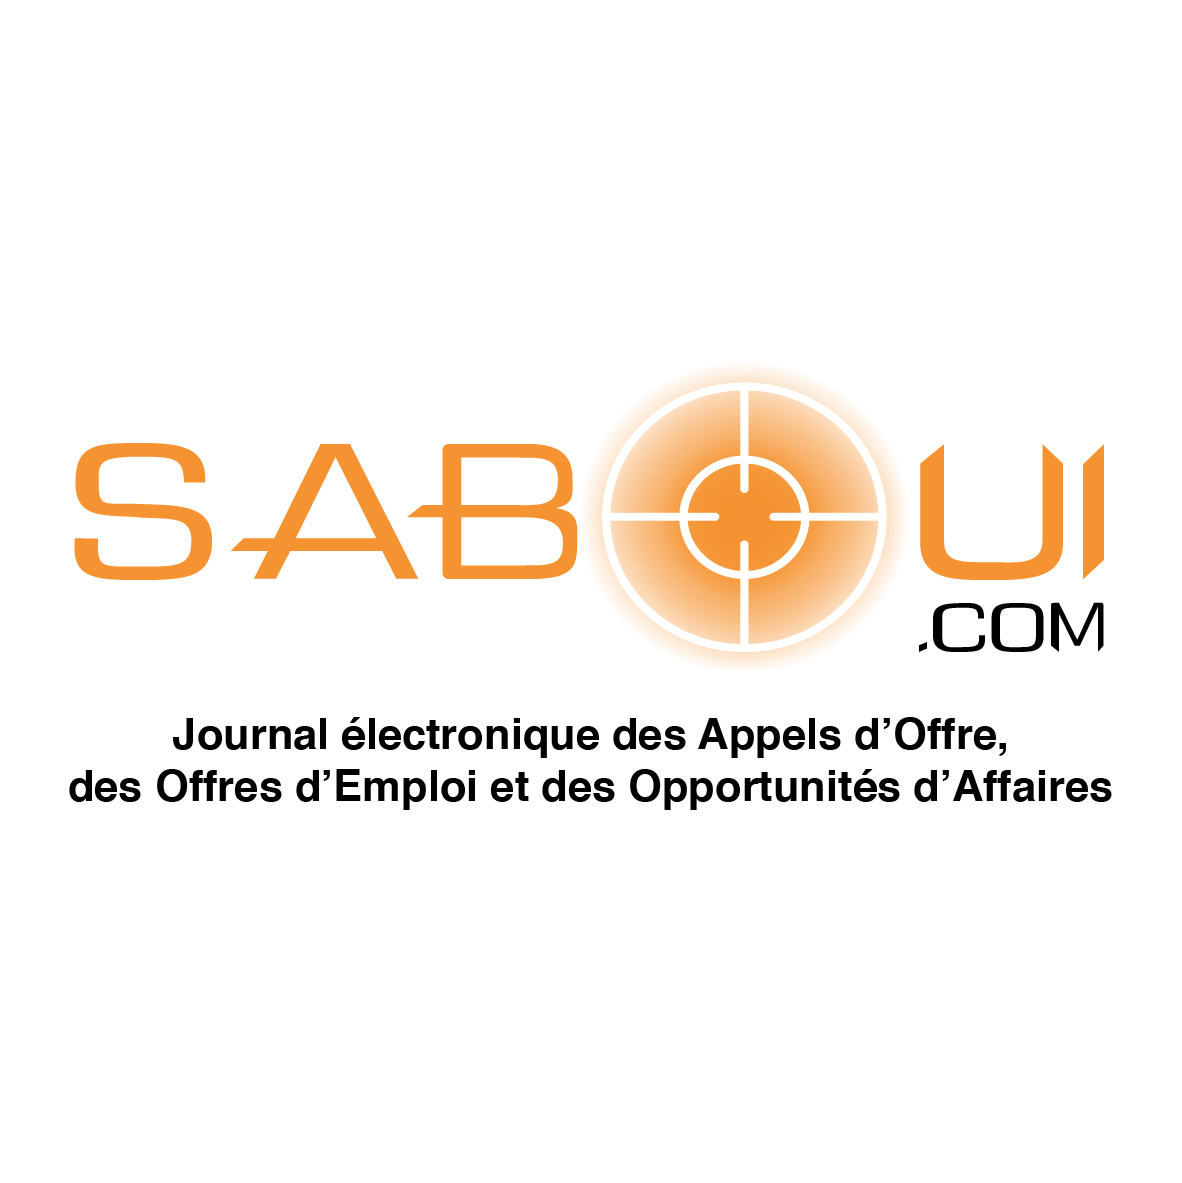 Offre d’emploi : saboui.com recherche un(e) Directeur/trice de publication